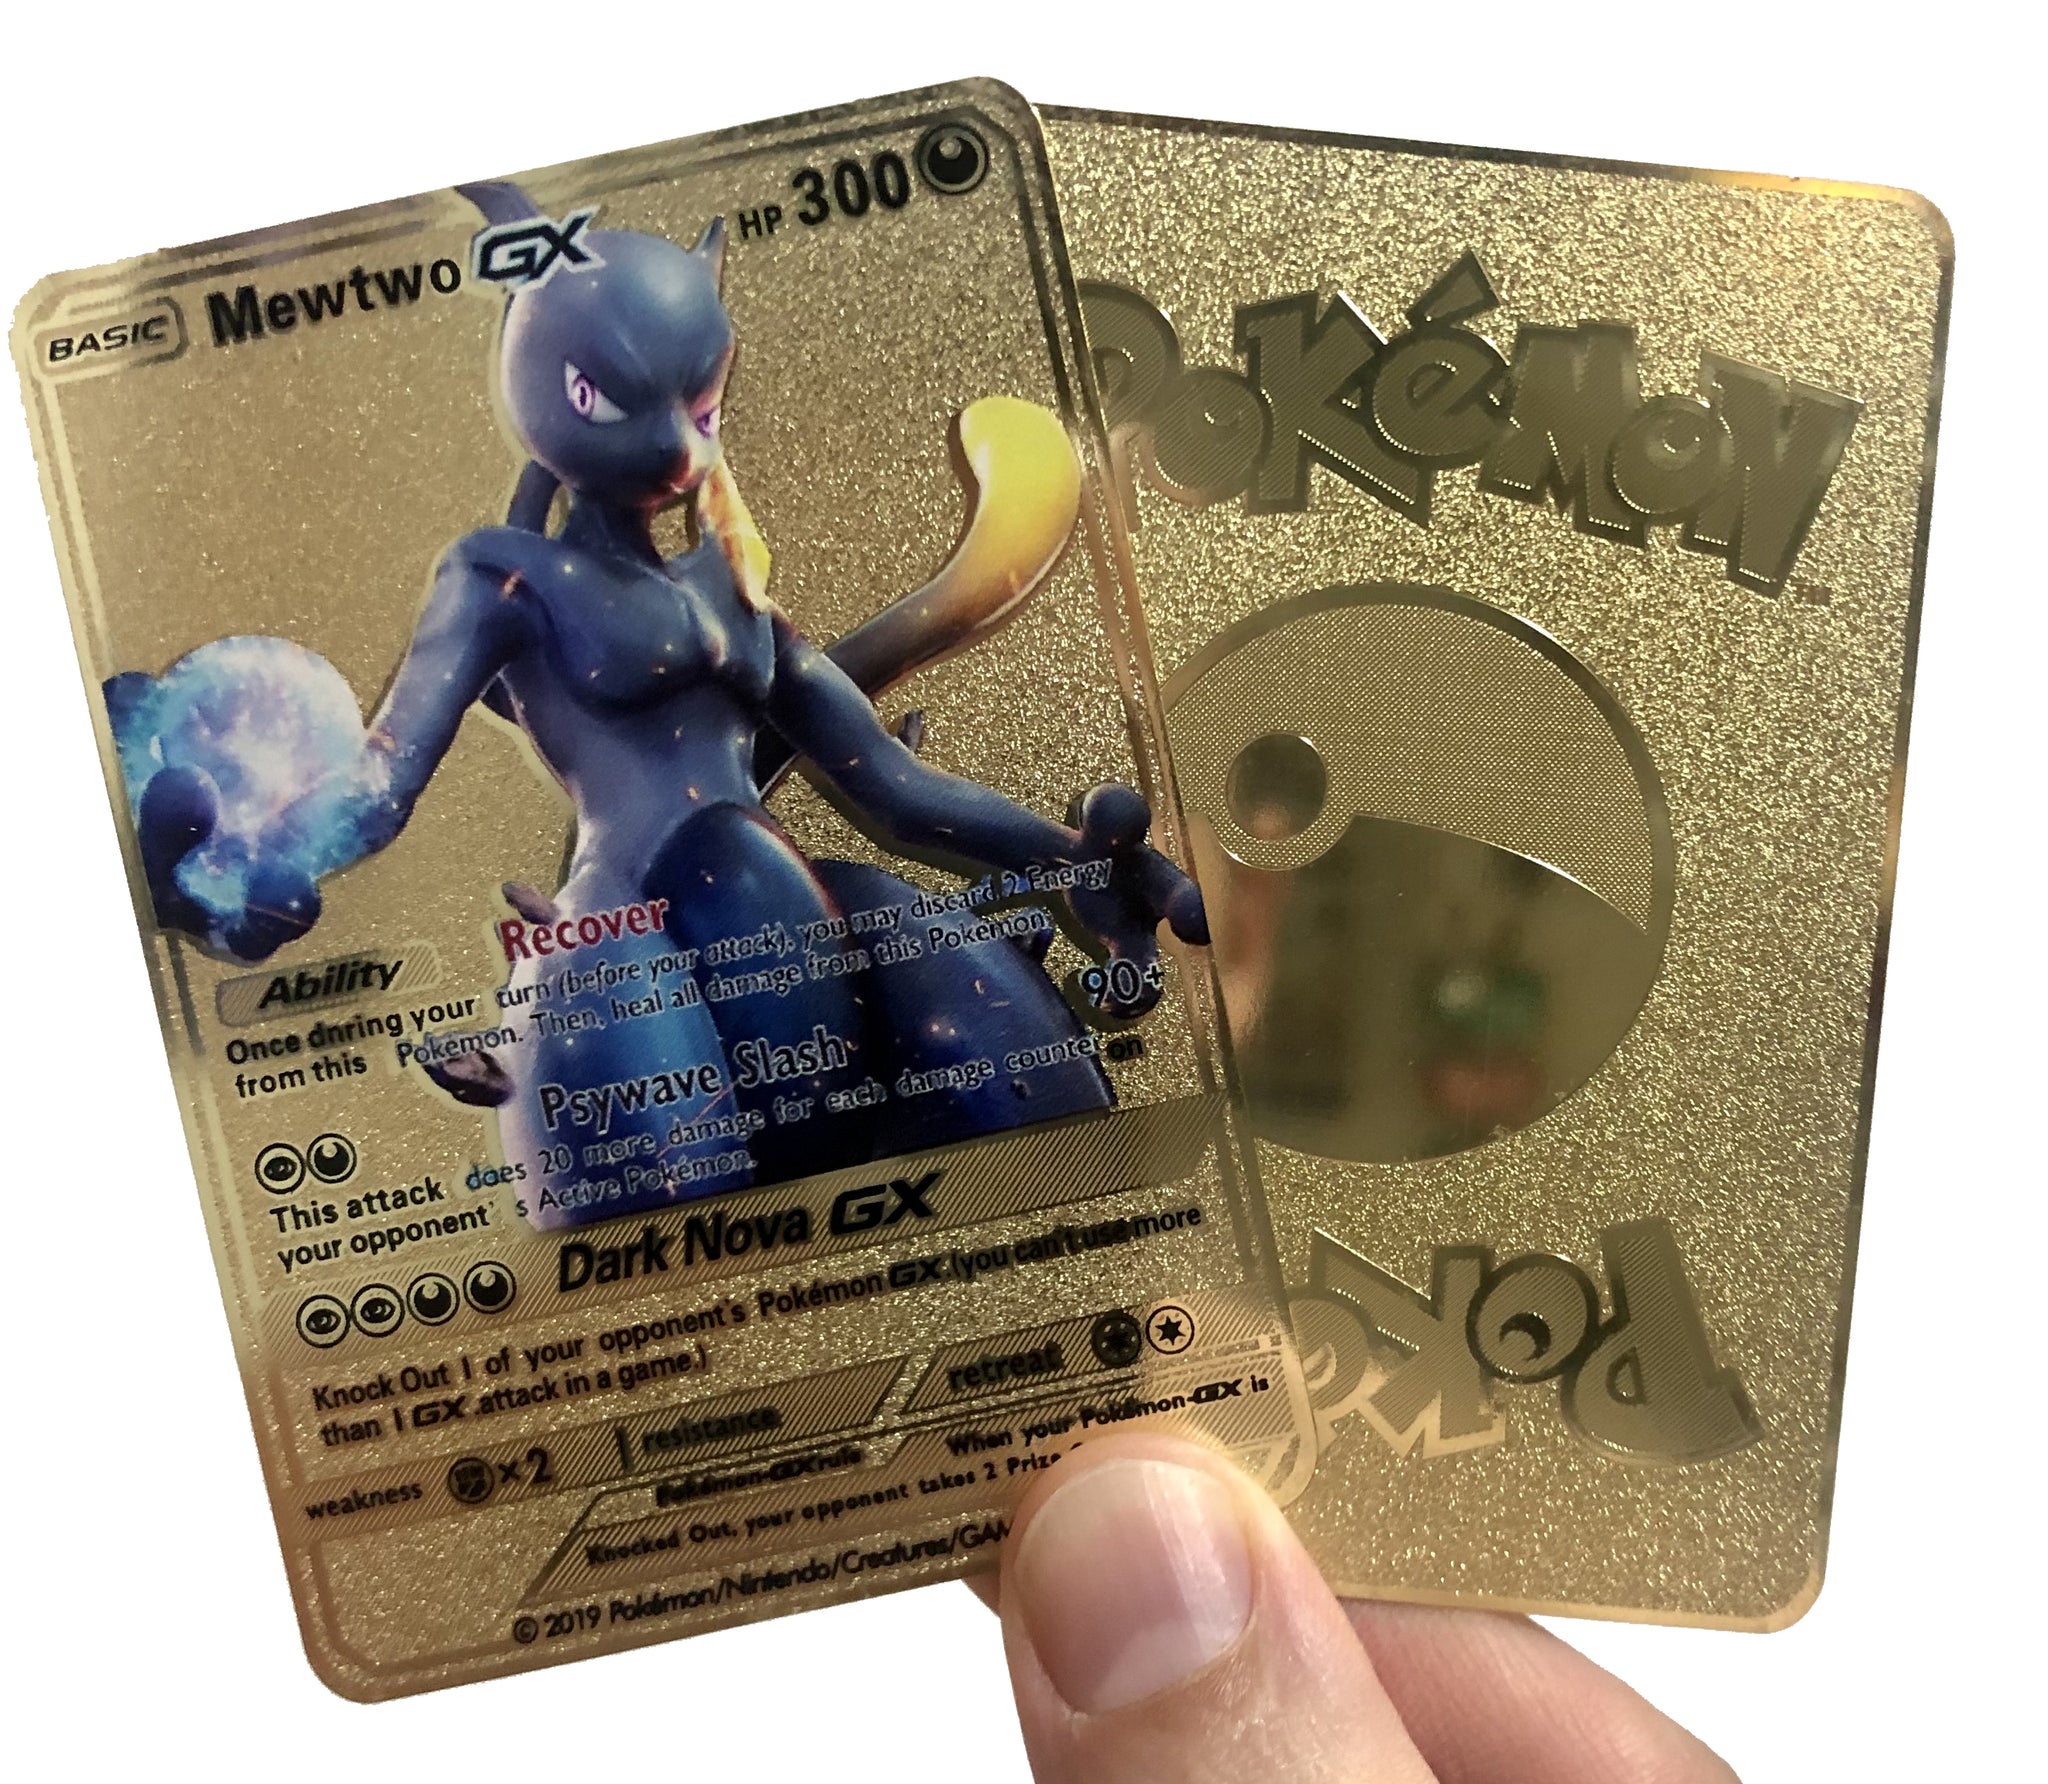 Shadow Mewtwo GX-Custom Pokemon Card,Gleiche Größe wie die echten Karten,Cu...